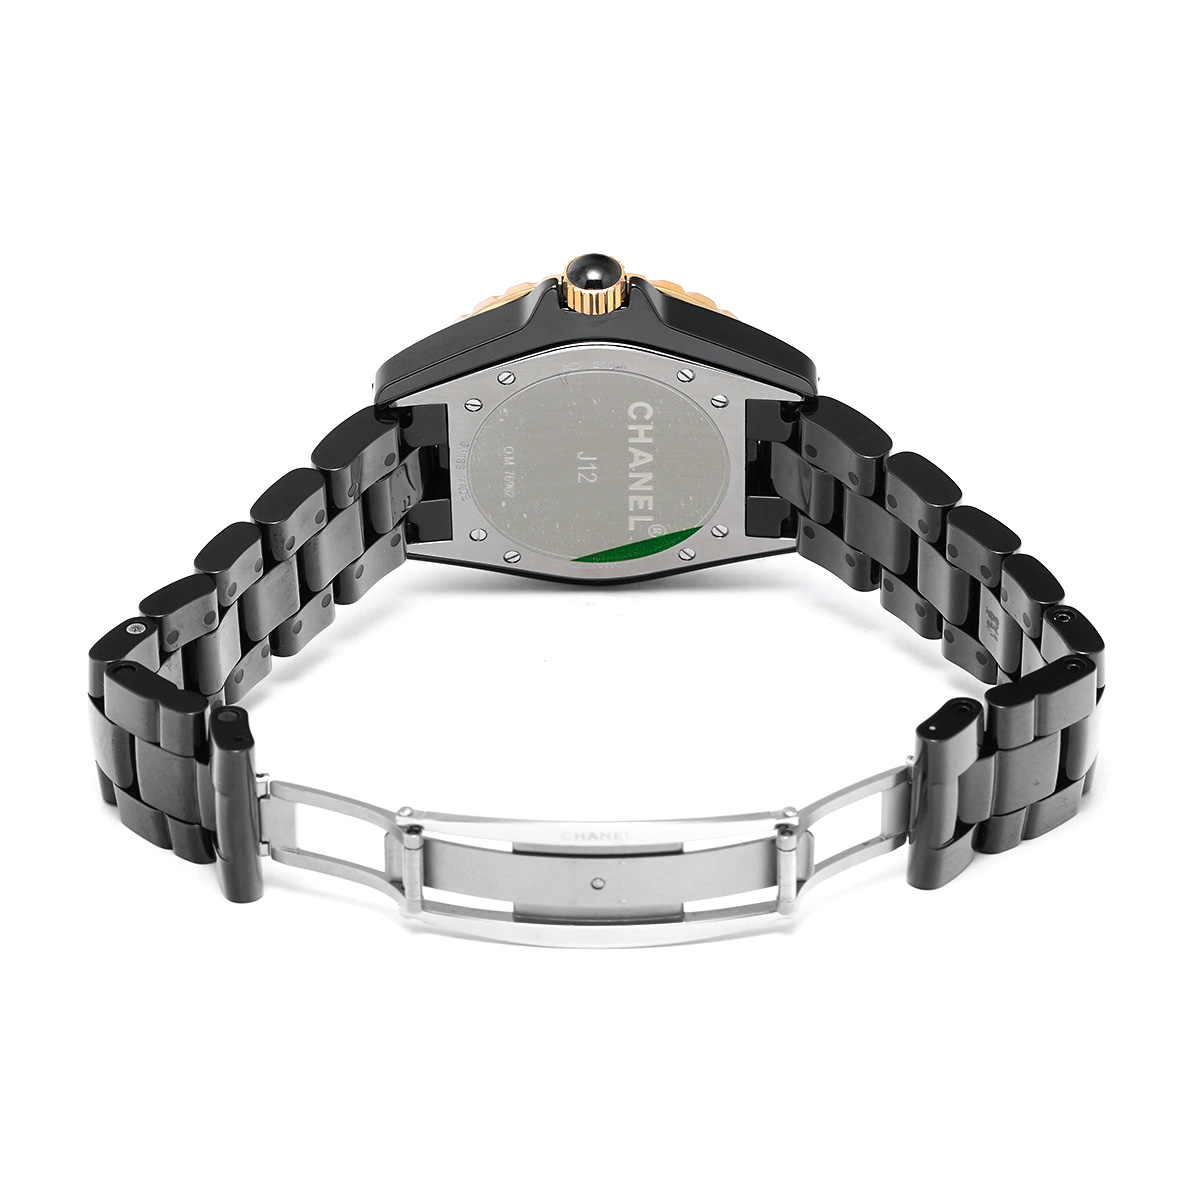 シャネル CHANEL H2544 ブラックラッカー /ダイヤモンド メンズ 腕時計